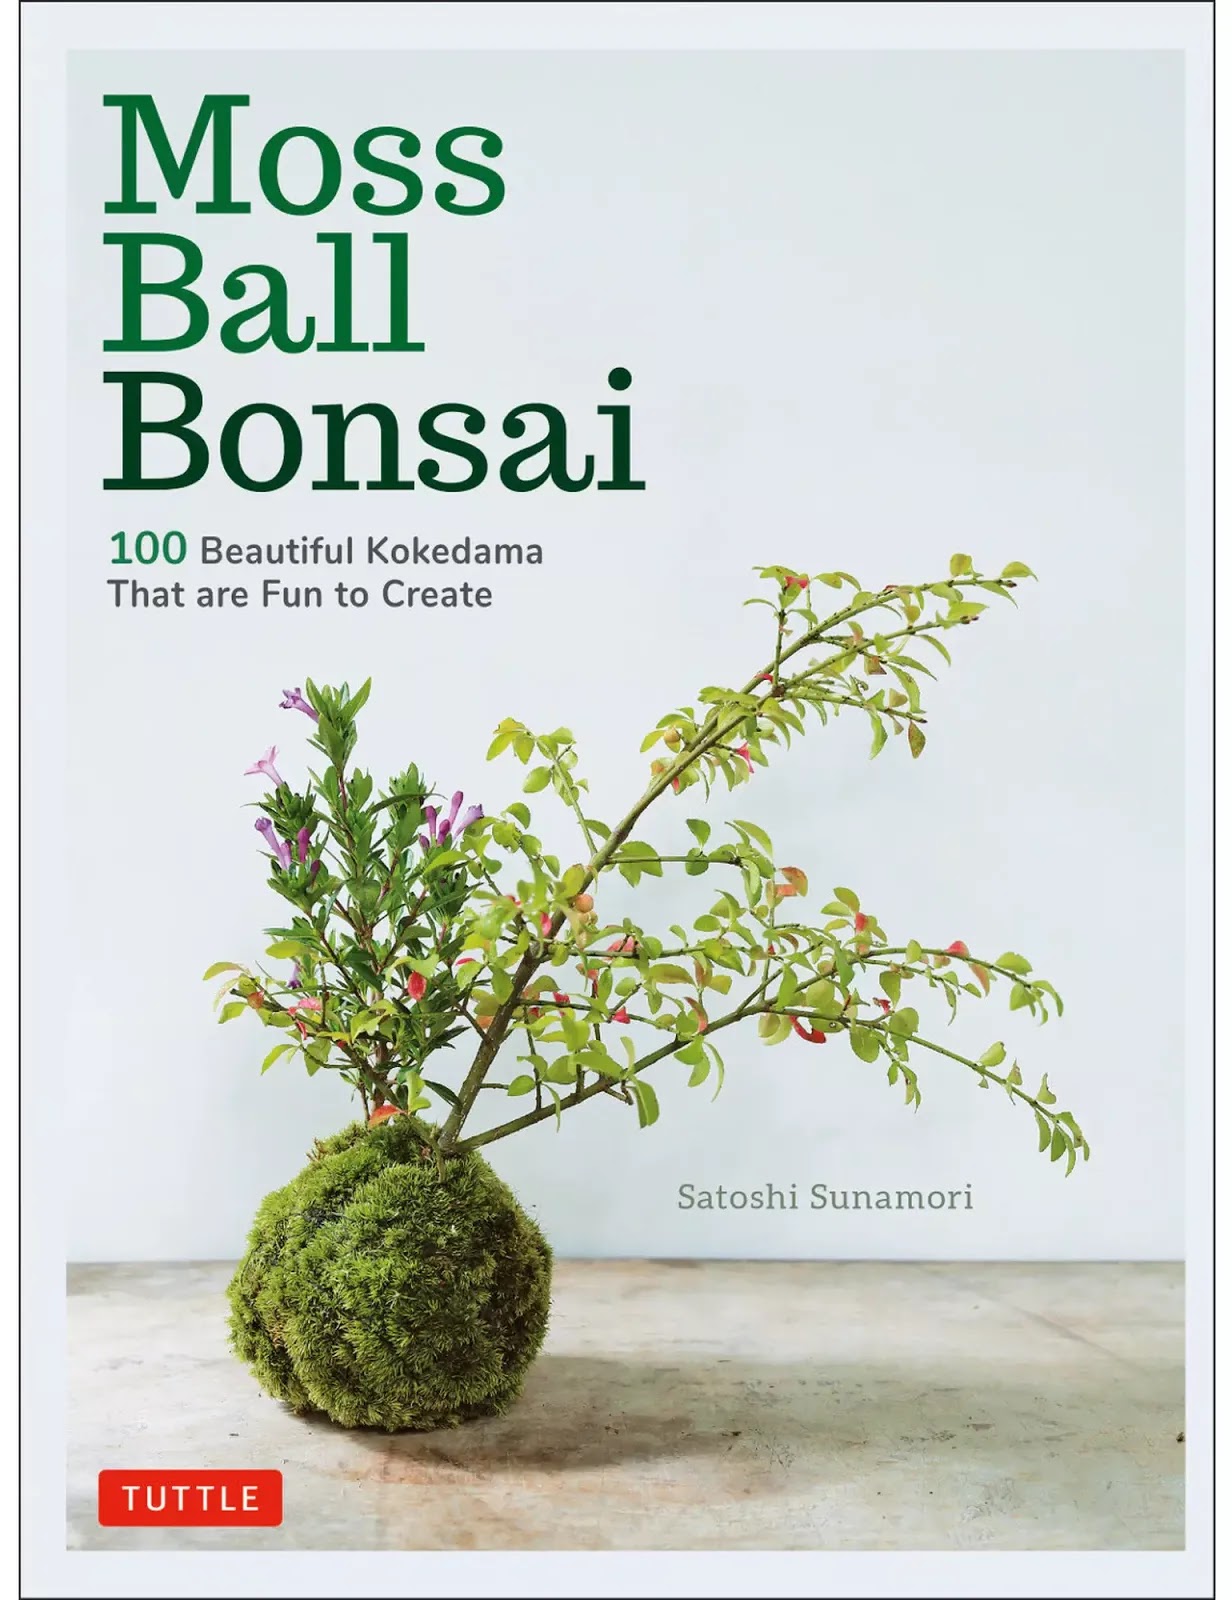 Live Moss Spores for Bonsai and Gardens at New England Bonsai Gardens